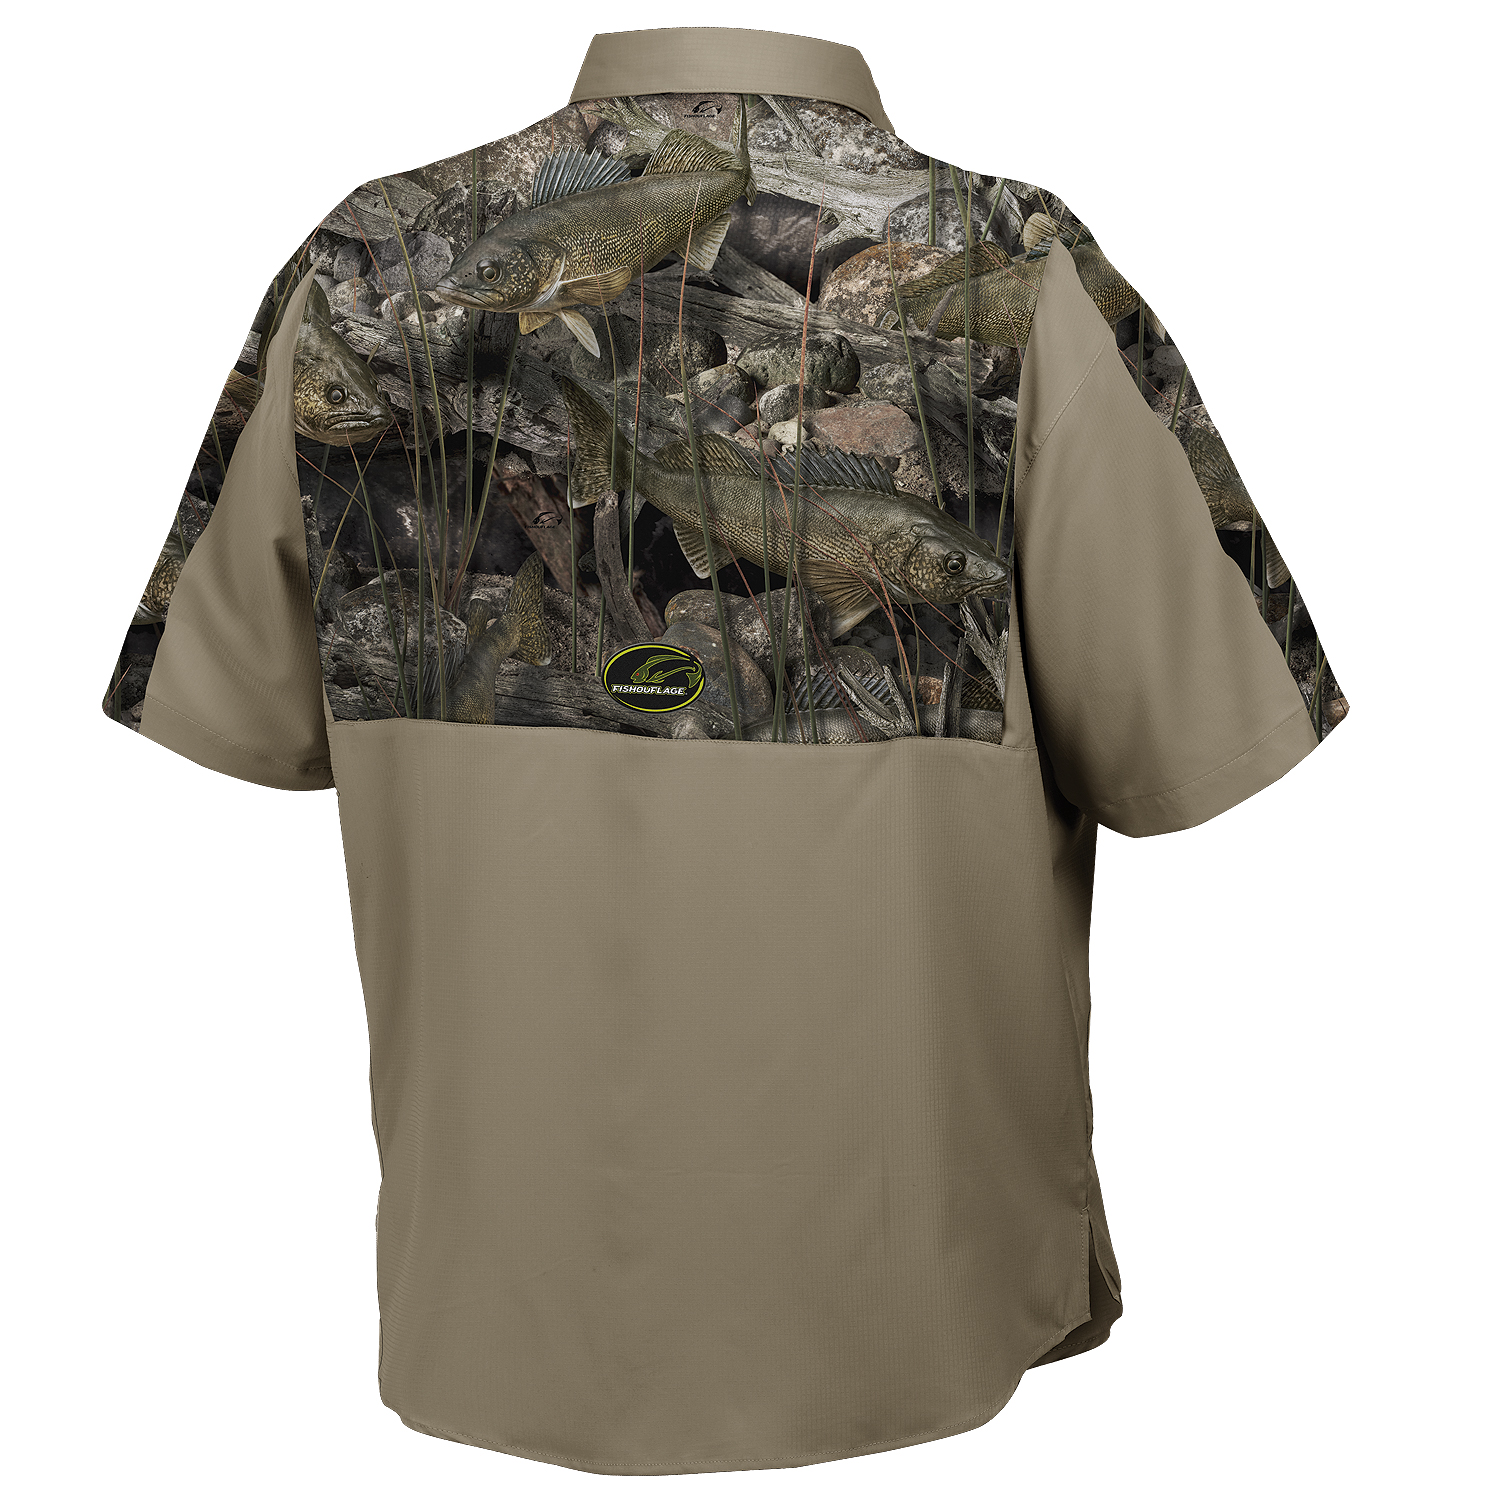 Fishouflage Bass Camo Guide Shirt – Men’s Split Rock Short-Sleeve Fishing Shirt